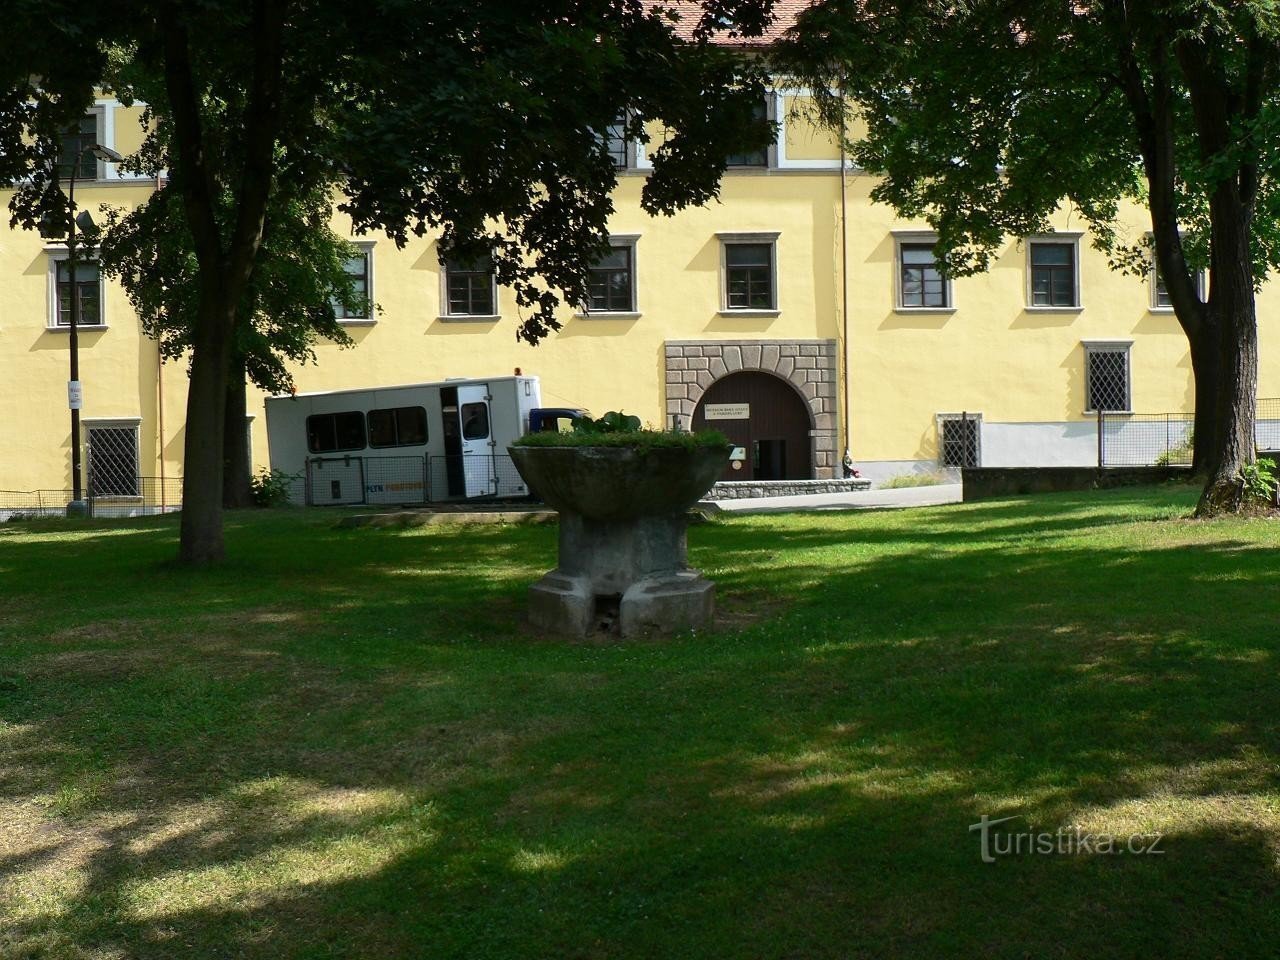 Střelské Hoštice, park in front of the castle